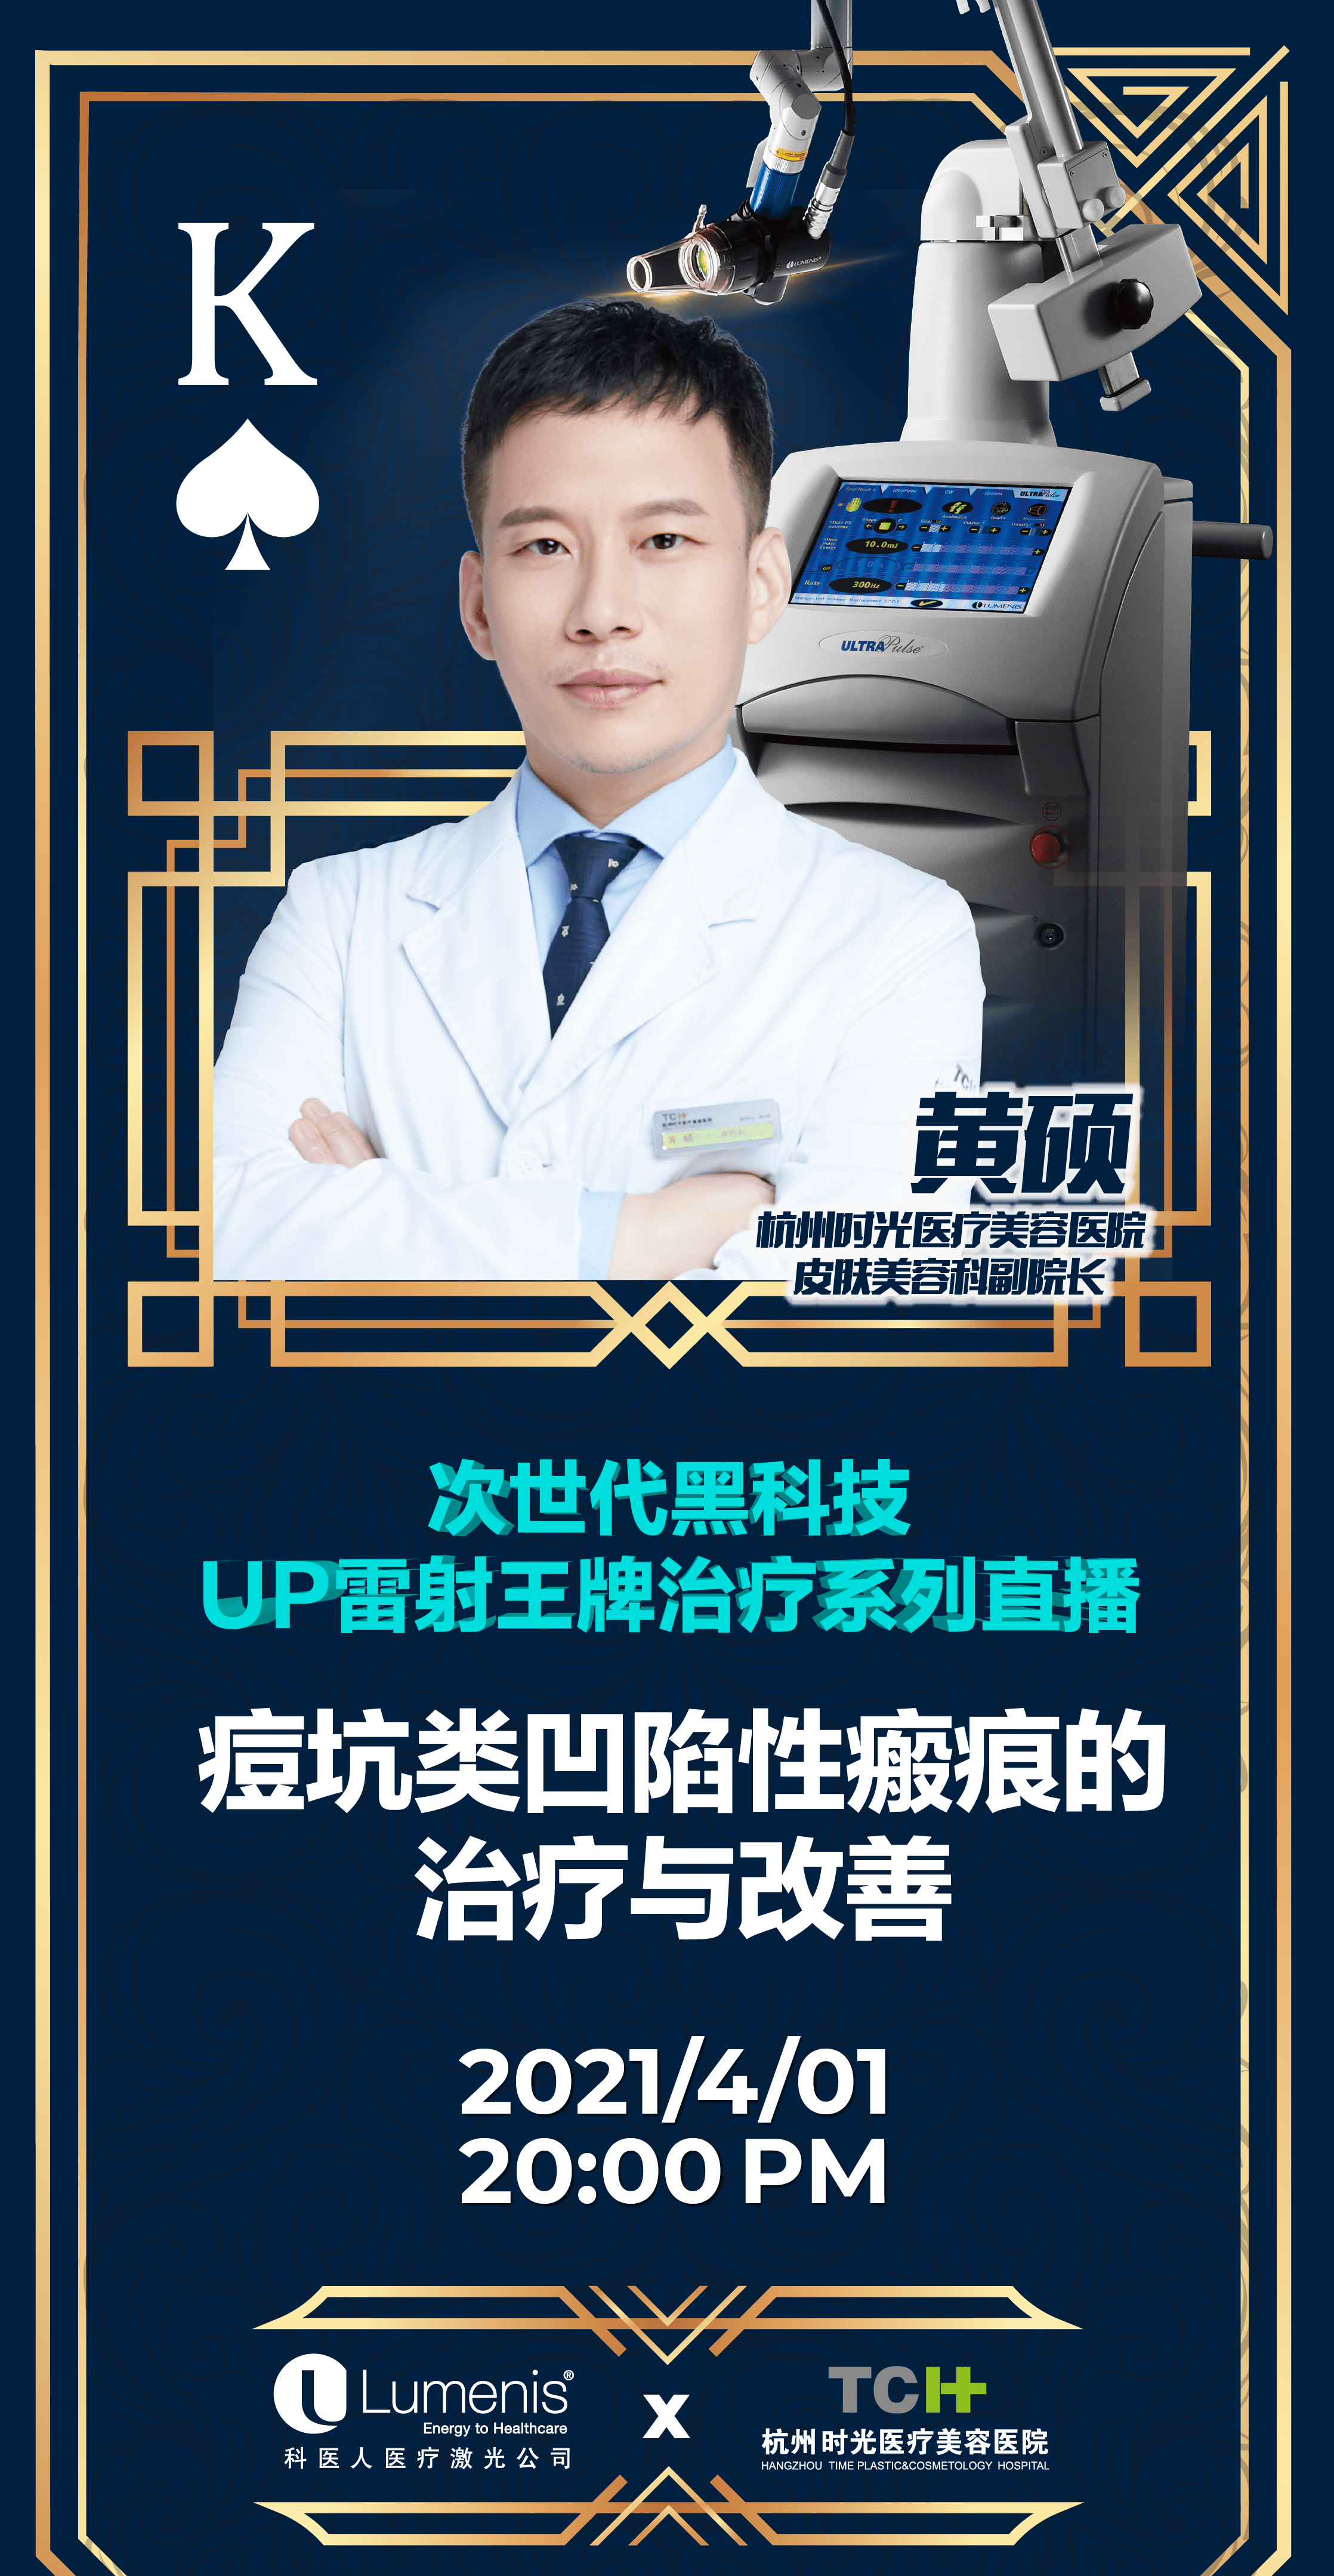 杭州|UP雷射王牌治疗系列直播解决你的面部烦恼